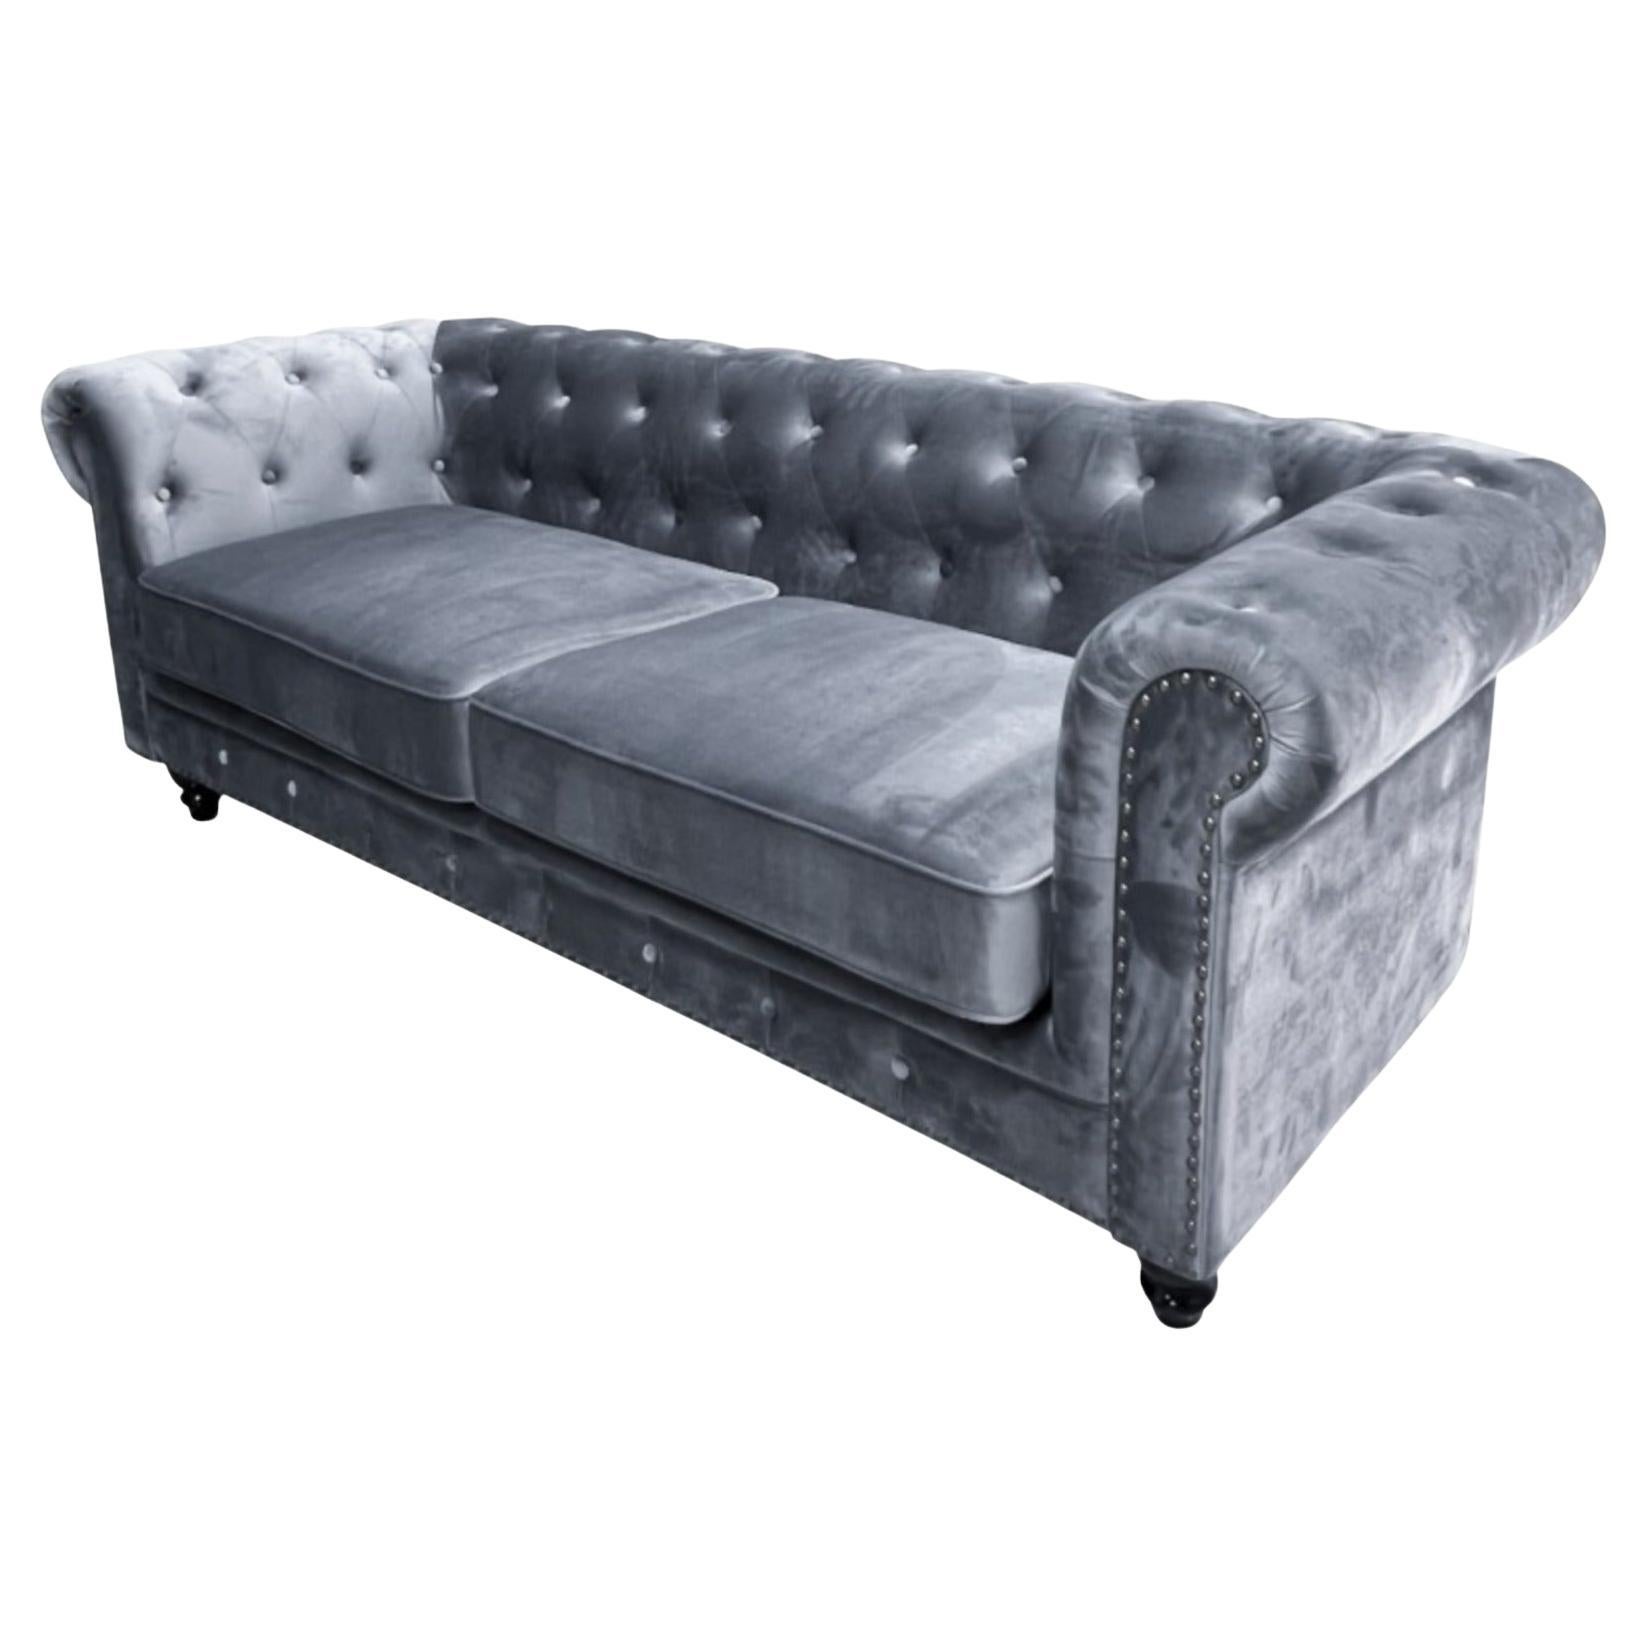 New Chester Premium 3 Seater Sofa, Gray Velvet Upholstery For Sale